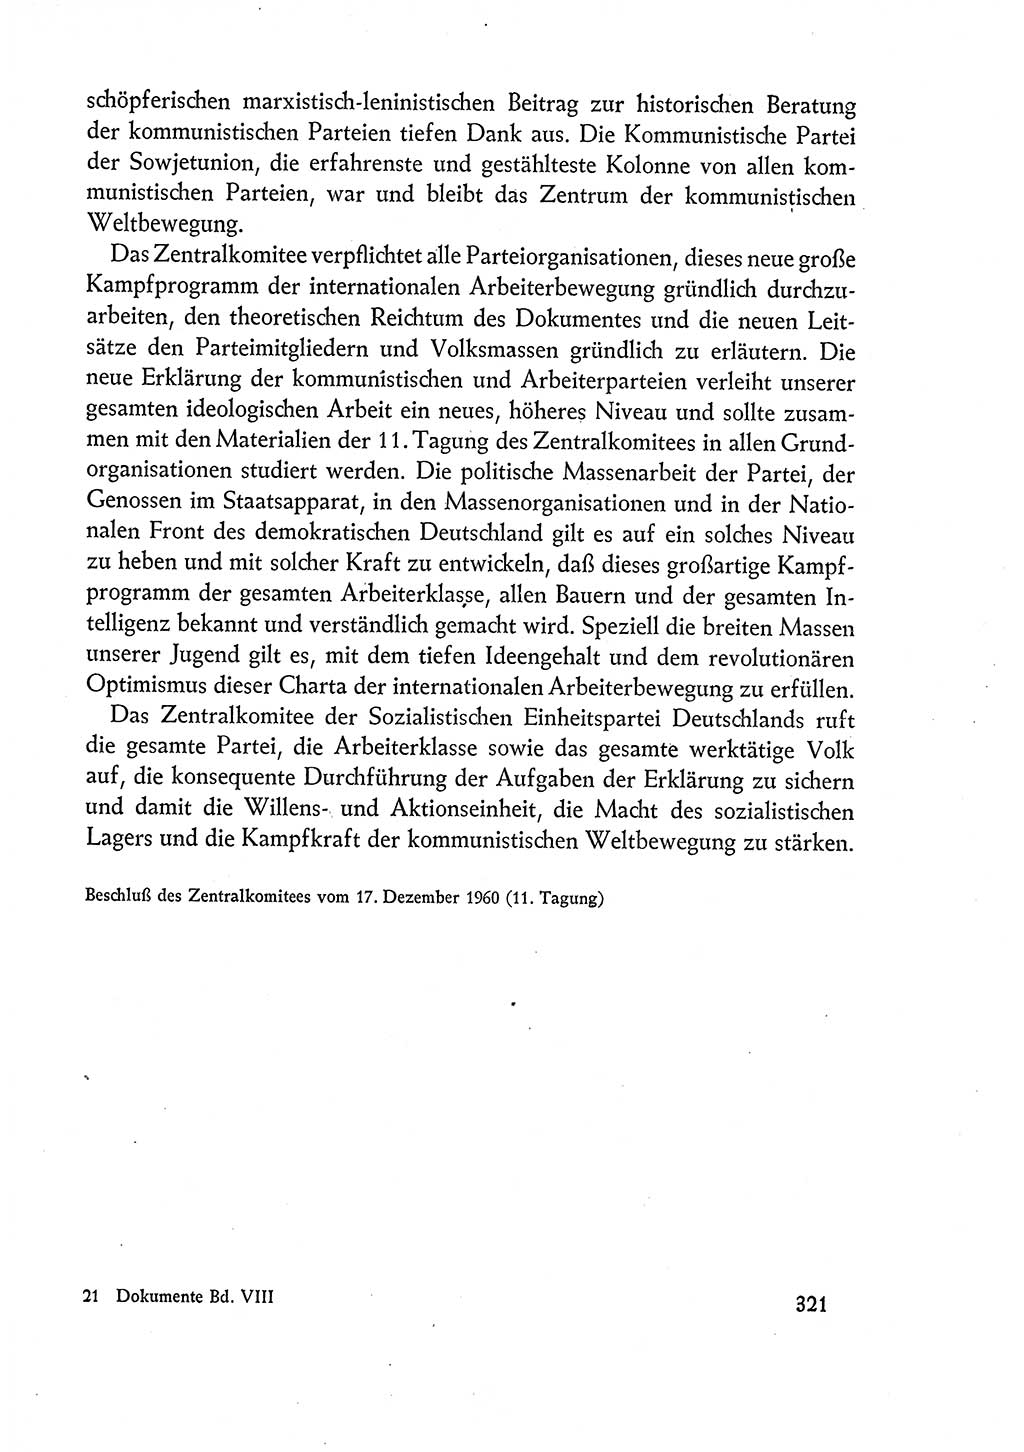 Dokumente der Sozialistischen Einheitspartei Deutschlands (SED) [Deutsche Demokratische Republik (DDR)] 1960-1961, Seite 321 (Dok. SED DDR 1960-1961, S. 321)